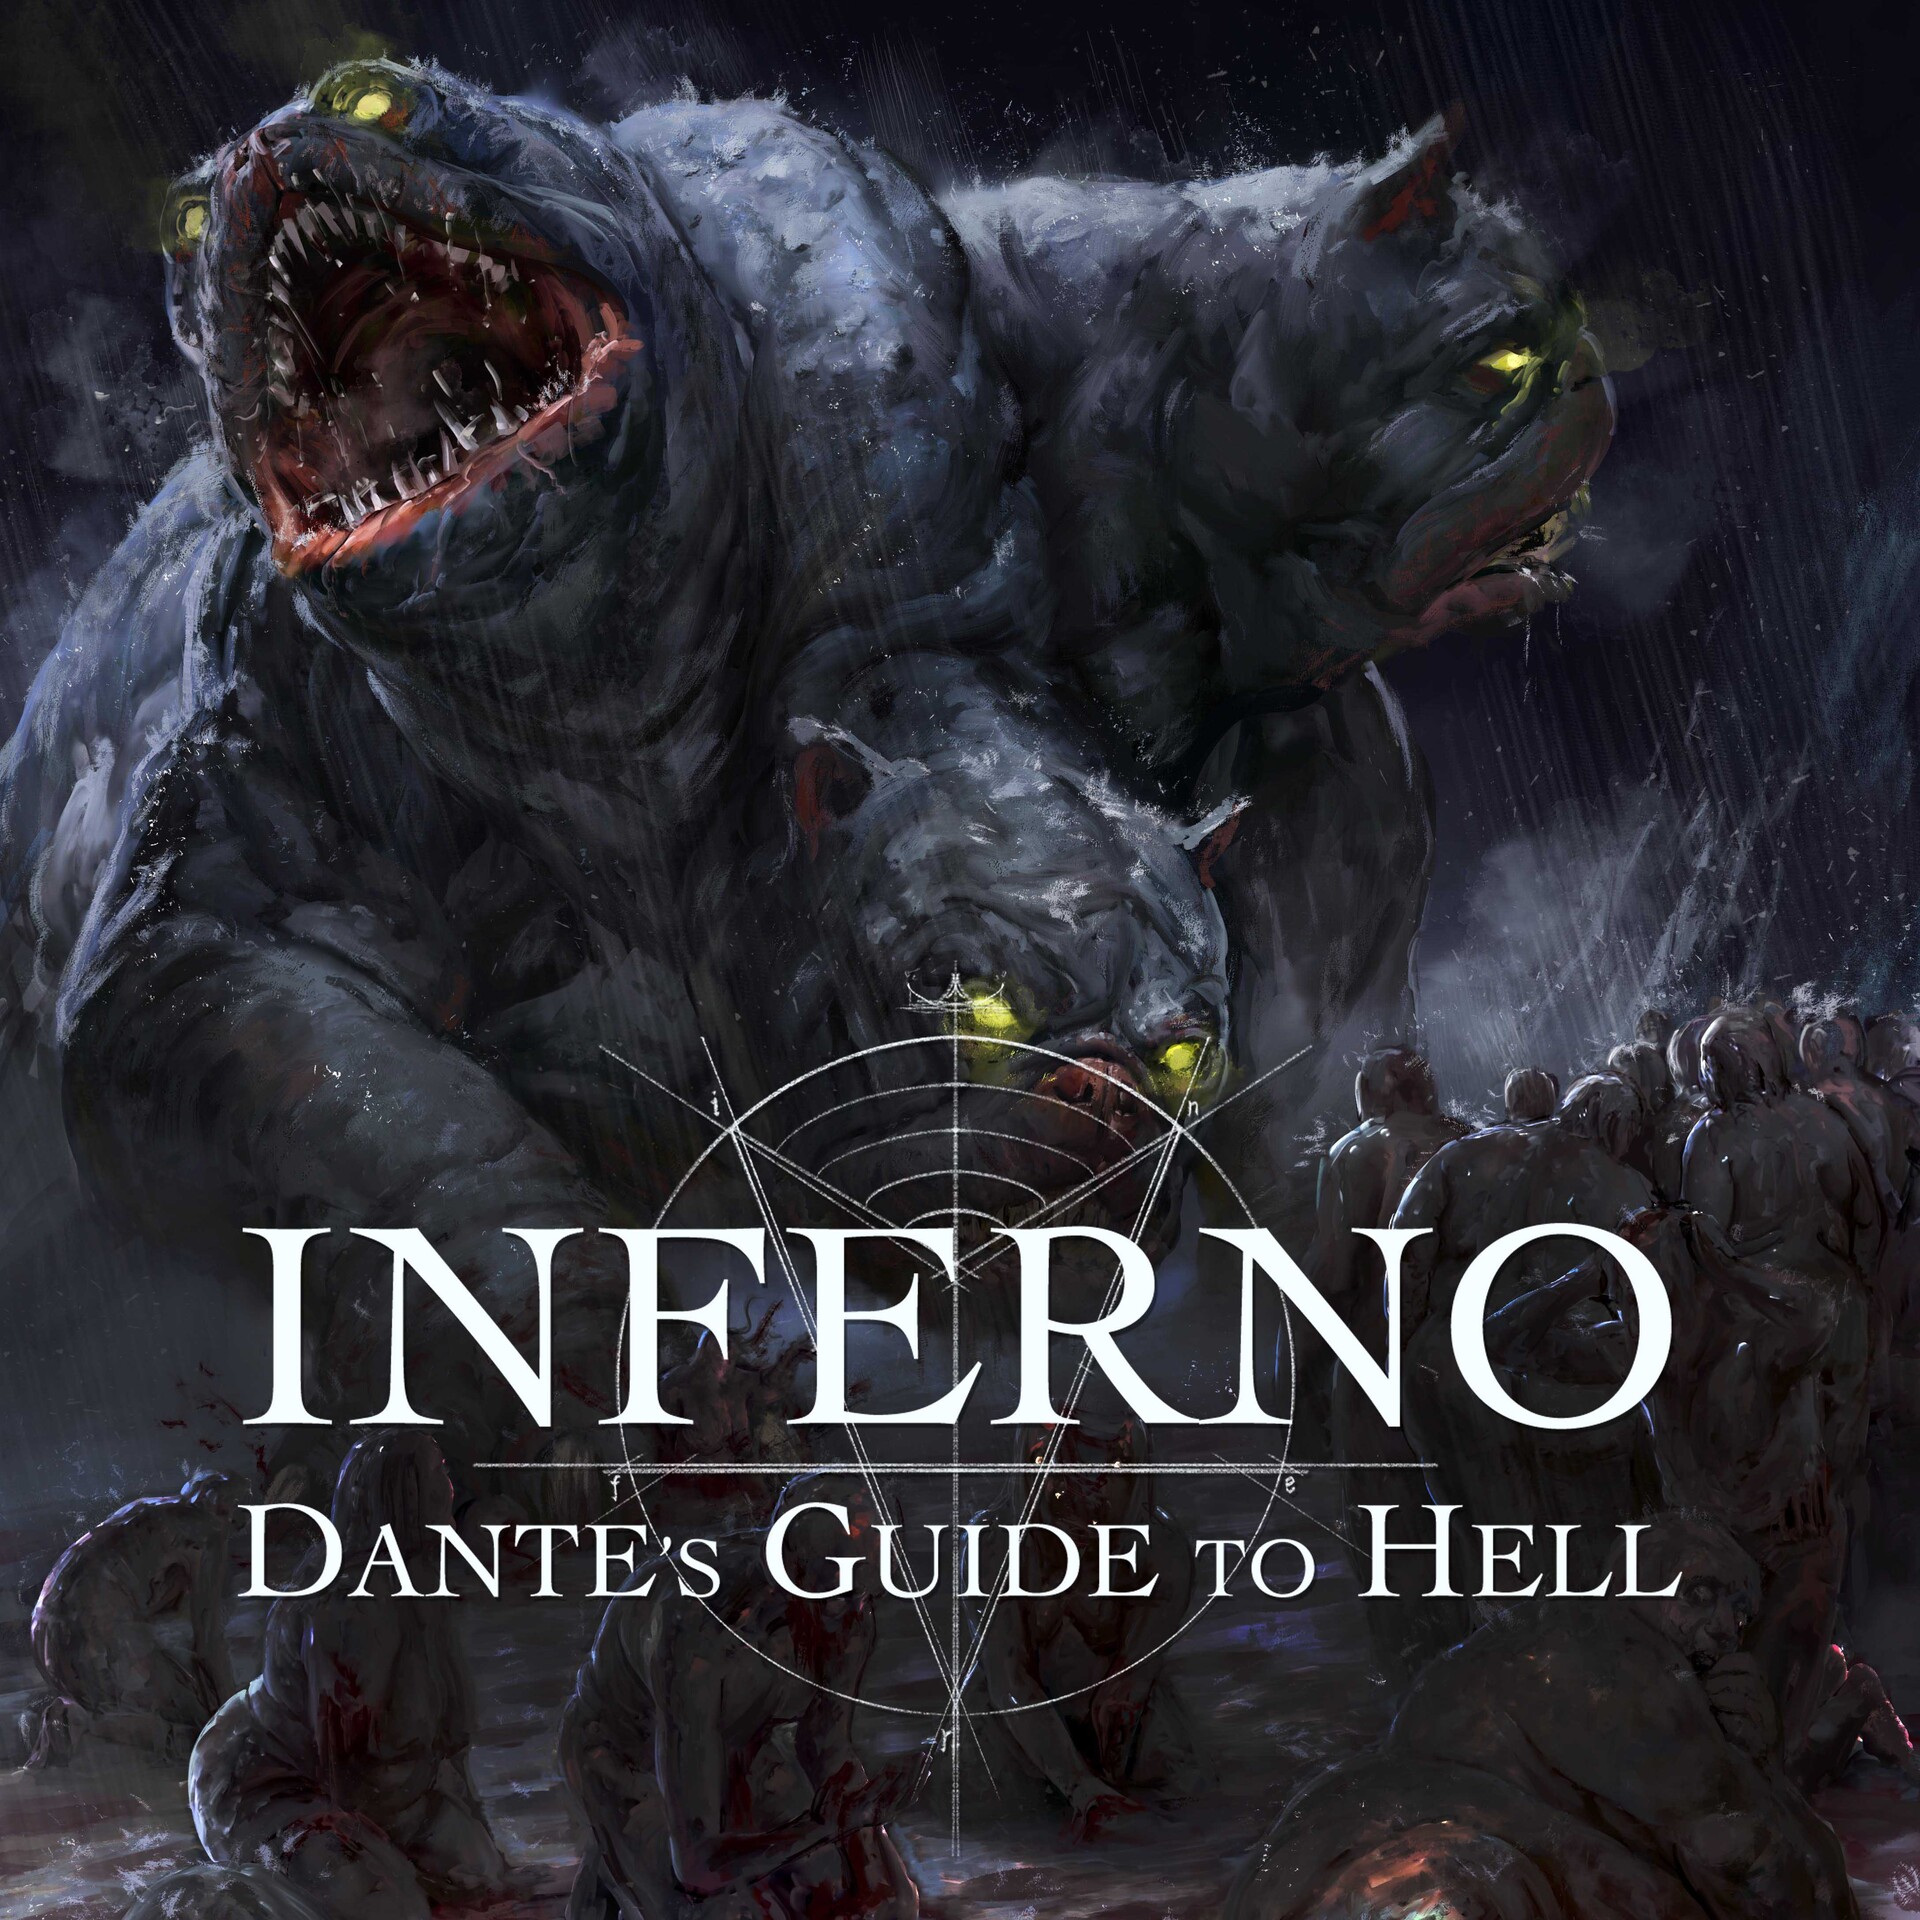 Cerbero - Inferno: Dante's Guide to Hell 5e by VincenzoPrattico on  DeviantArt